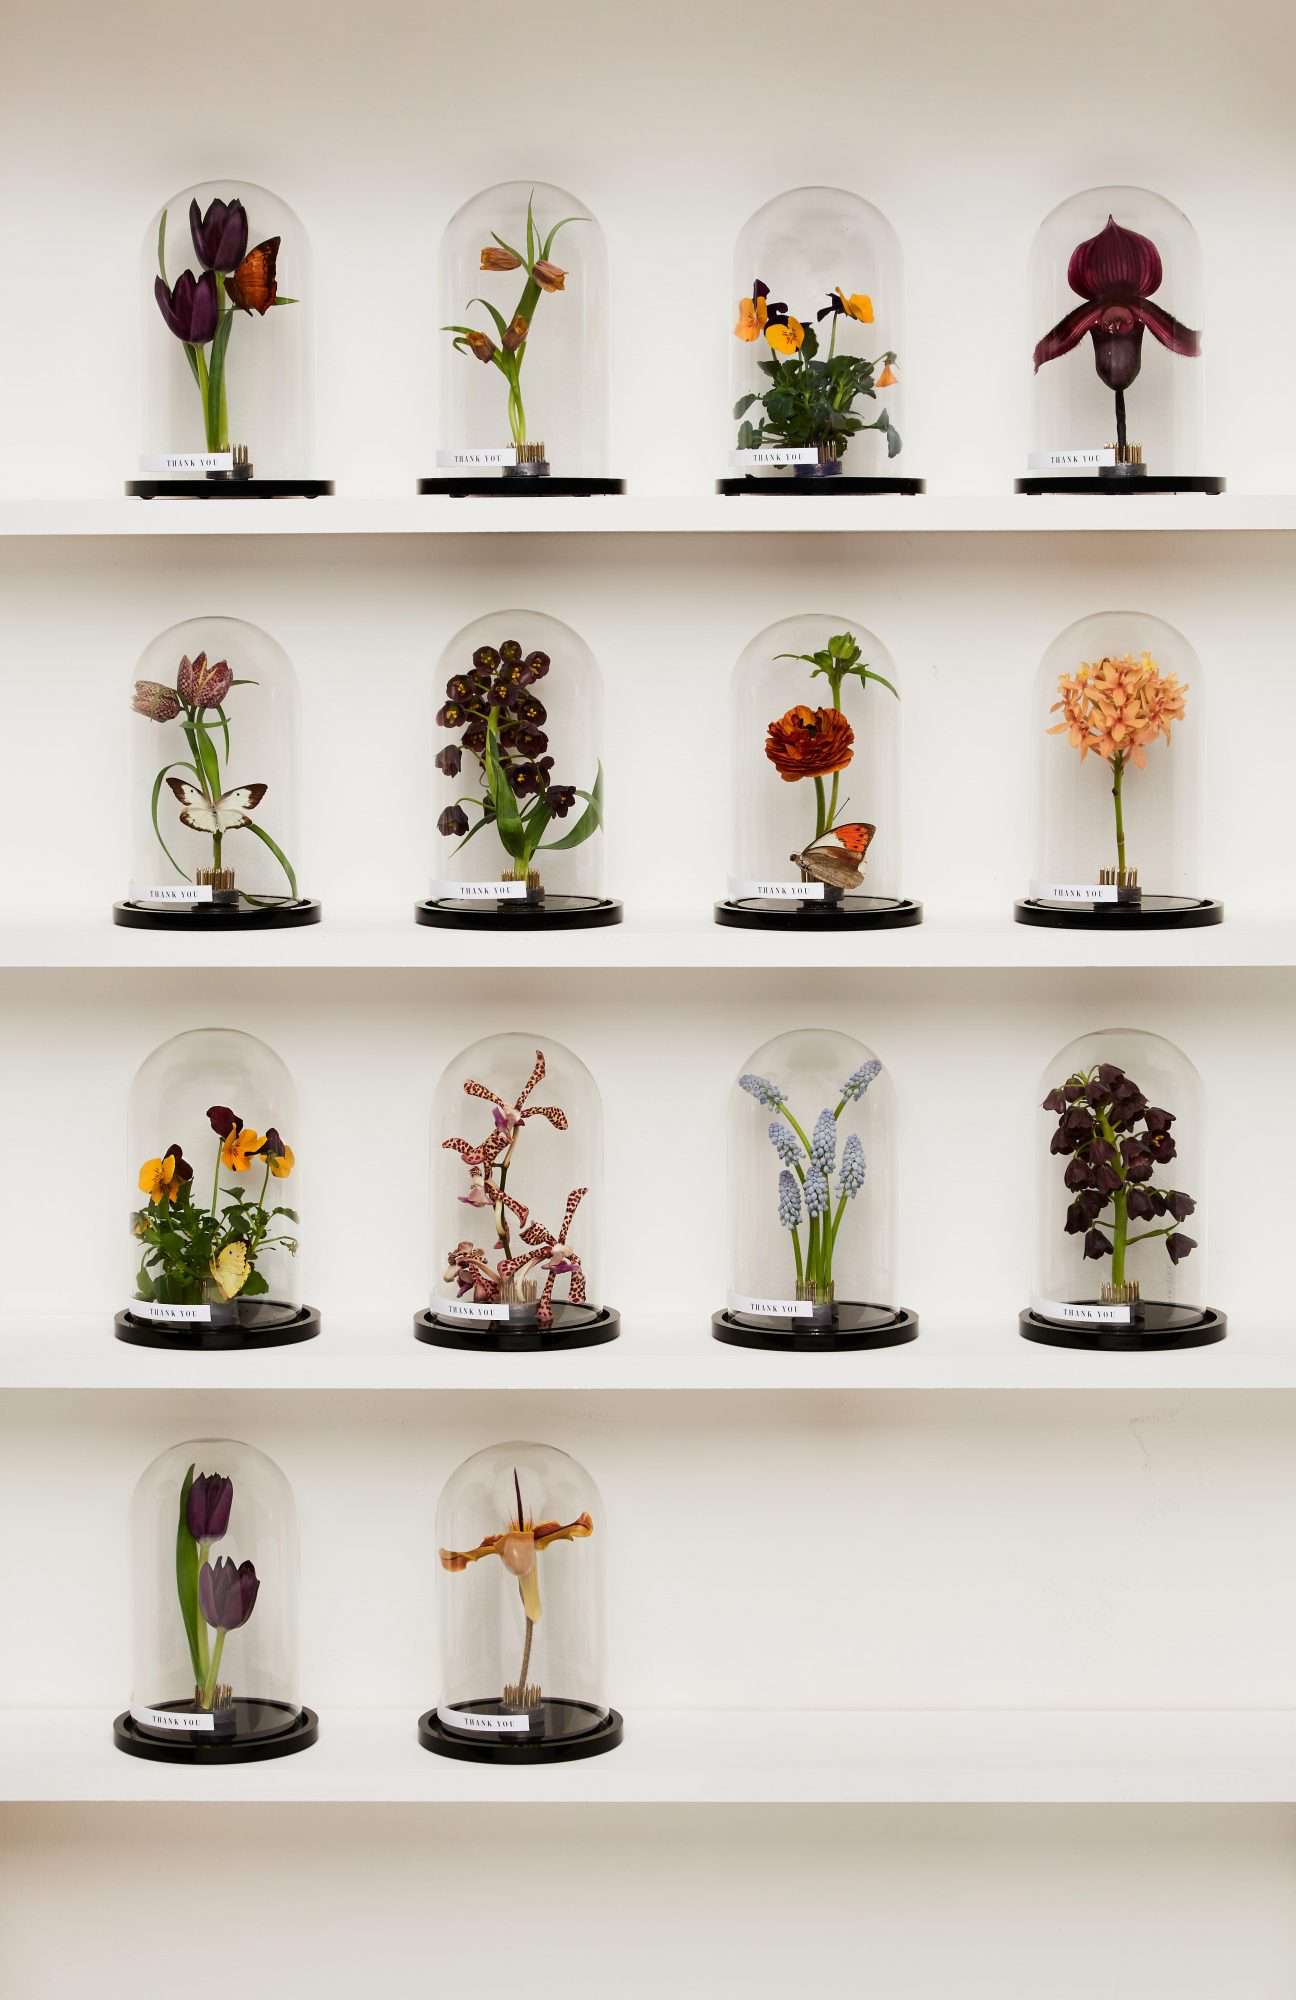 Flower specimens